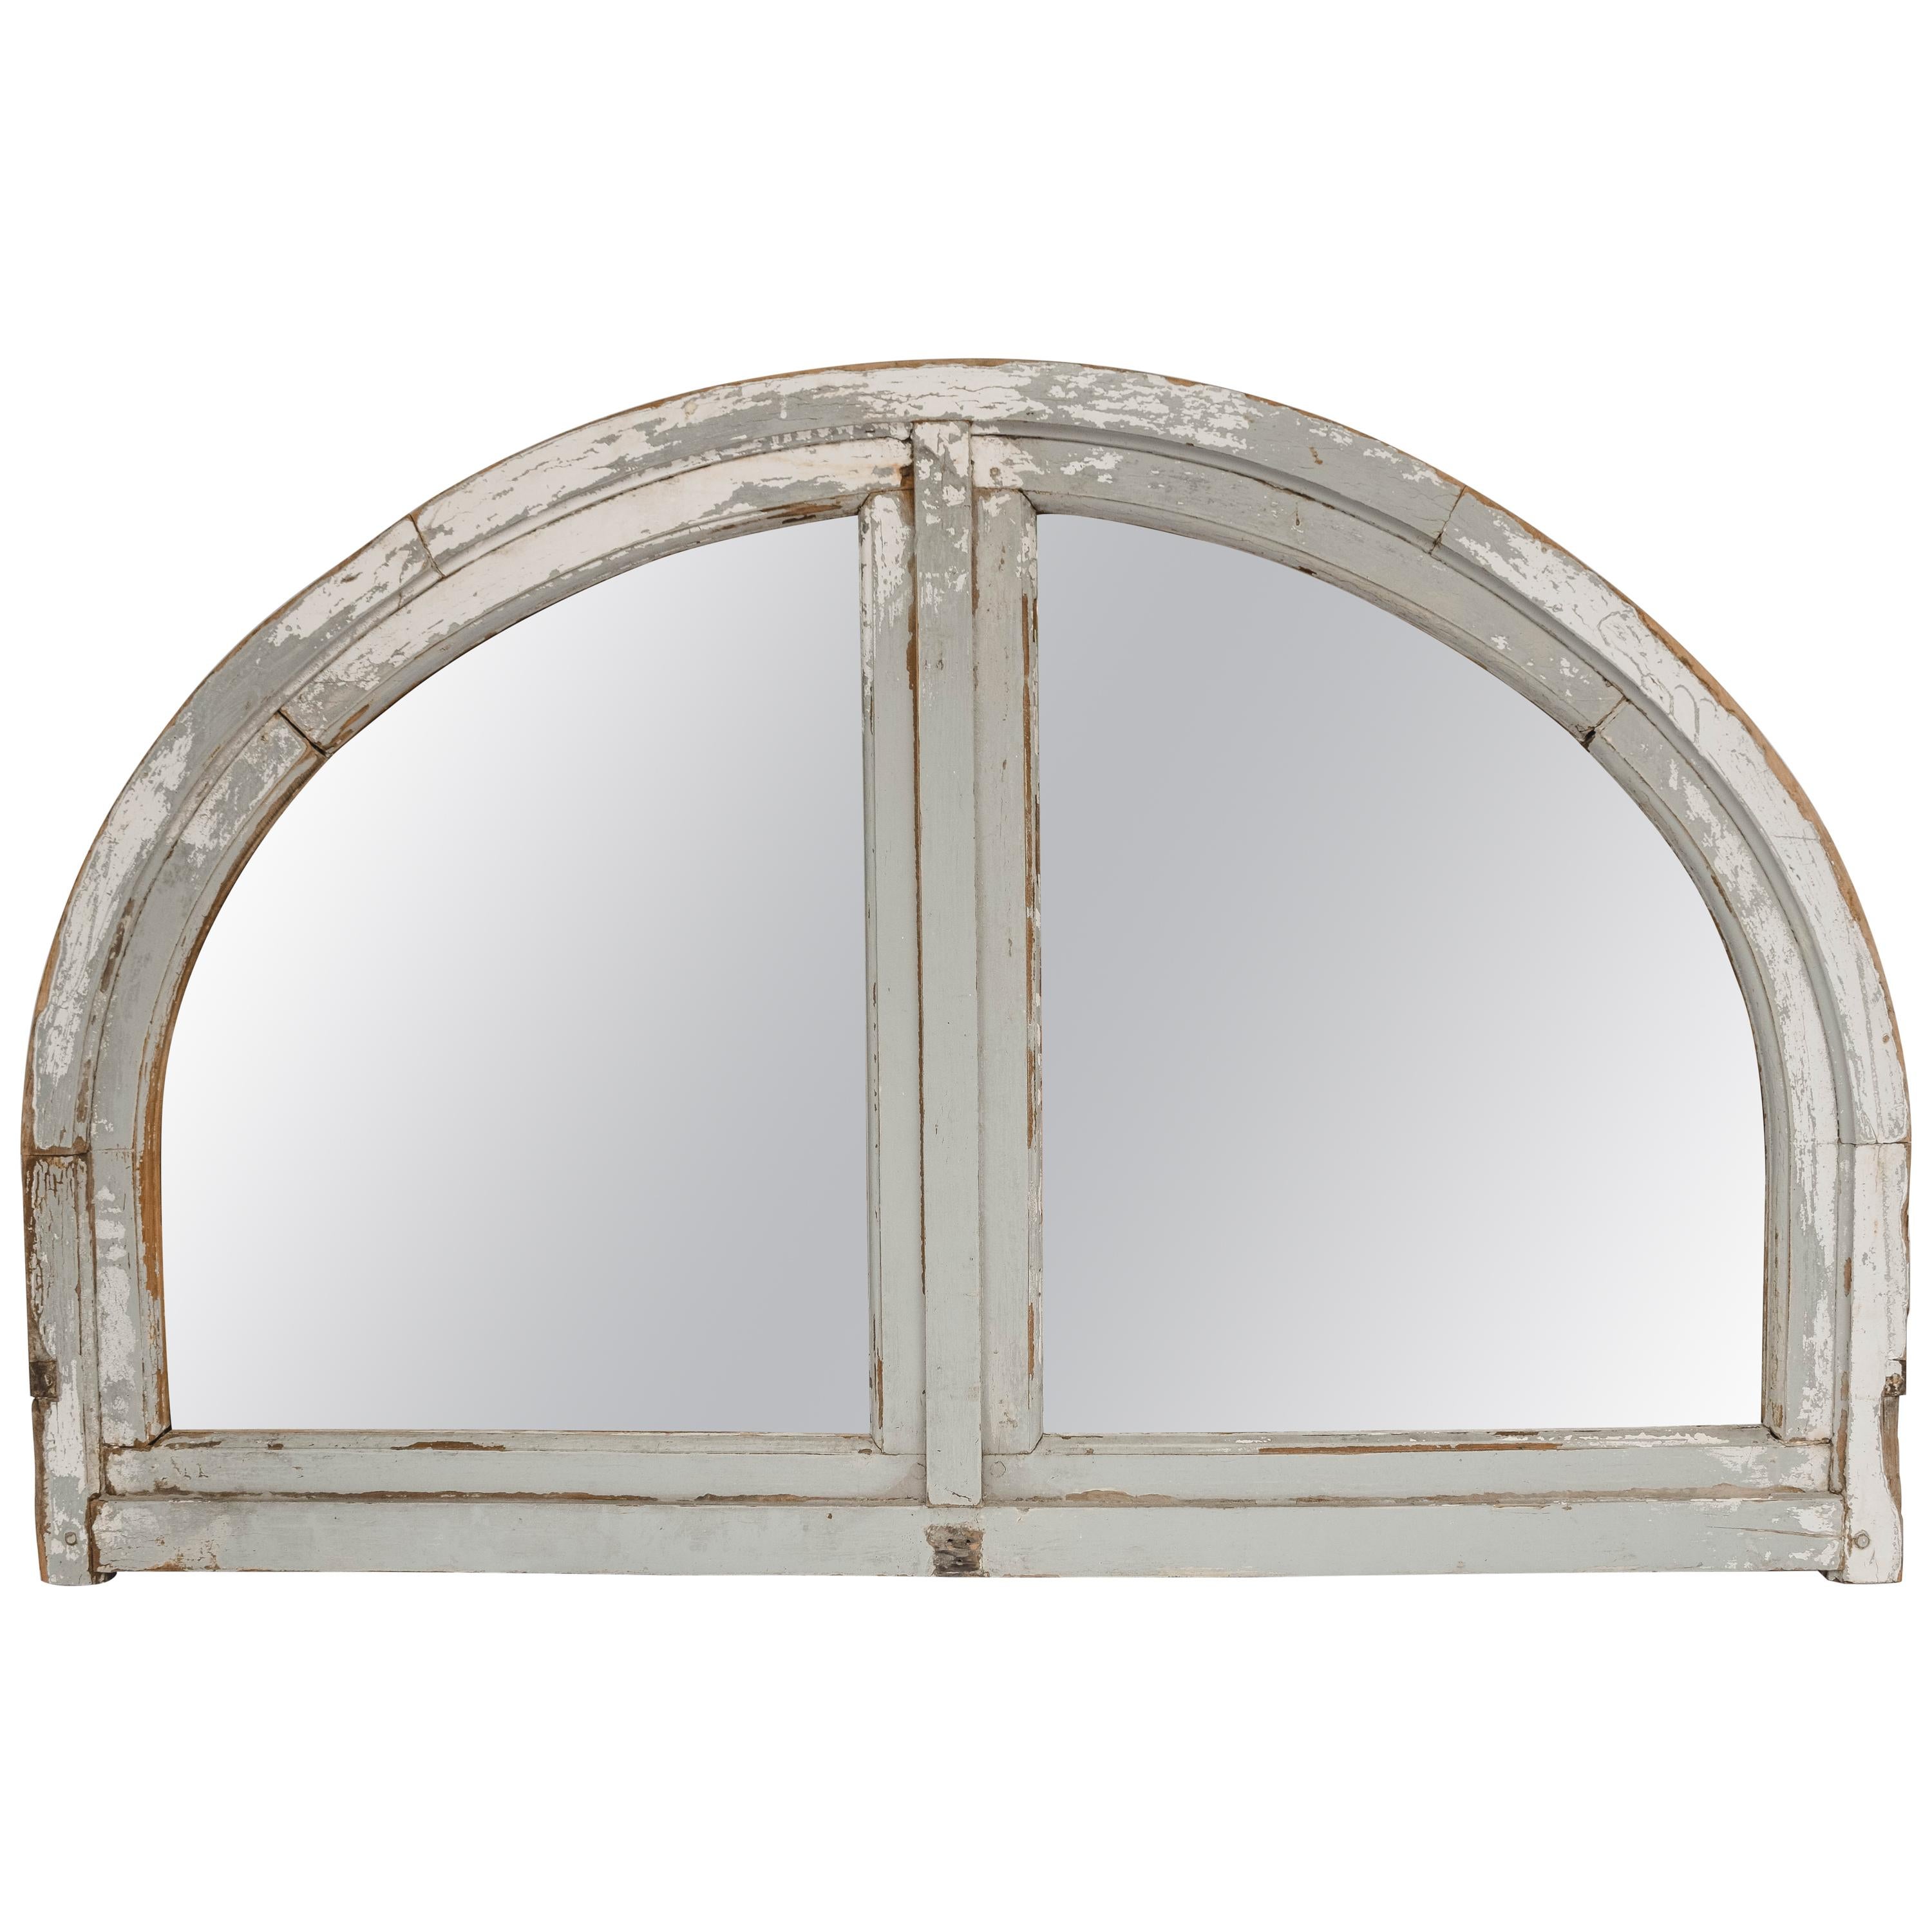 Antique French Half Round Window Casement/ Mirror